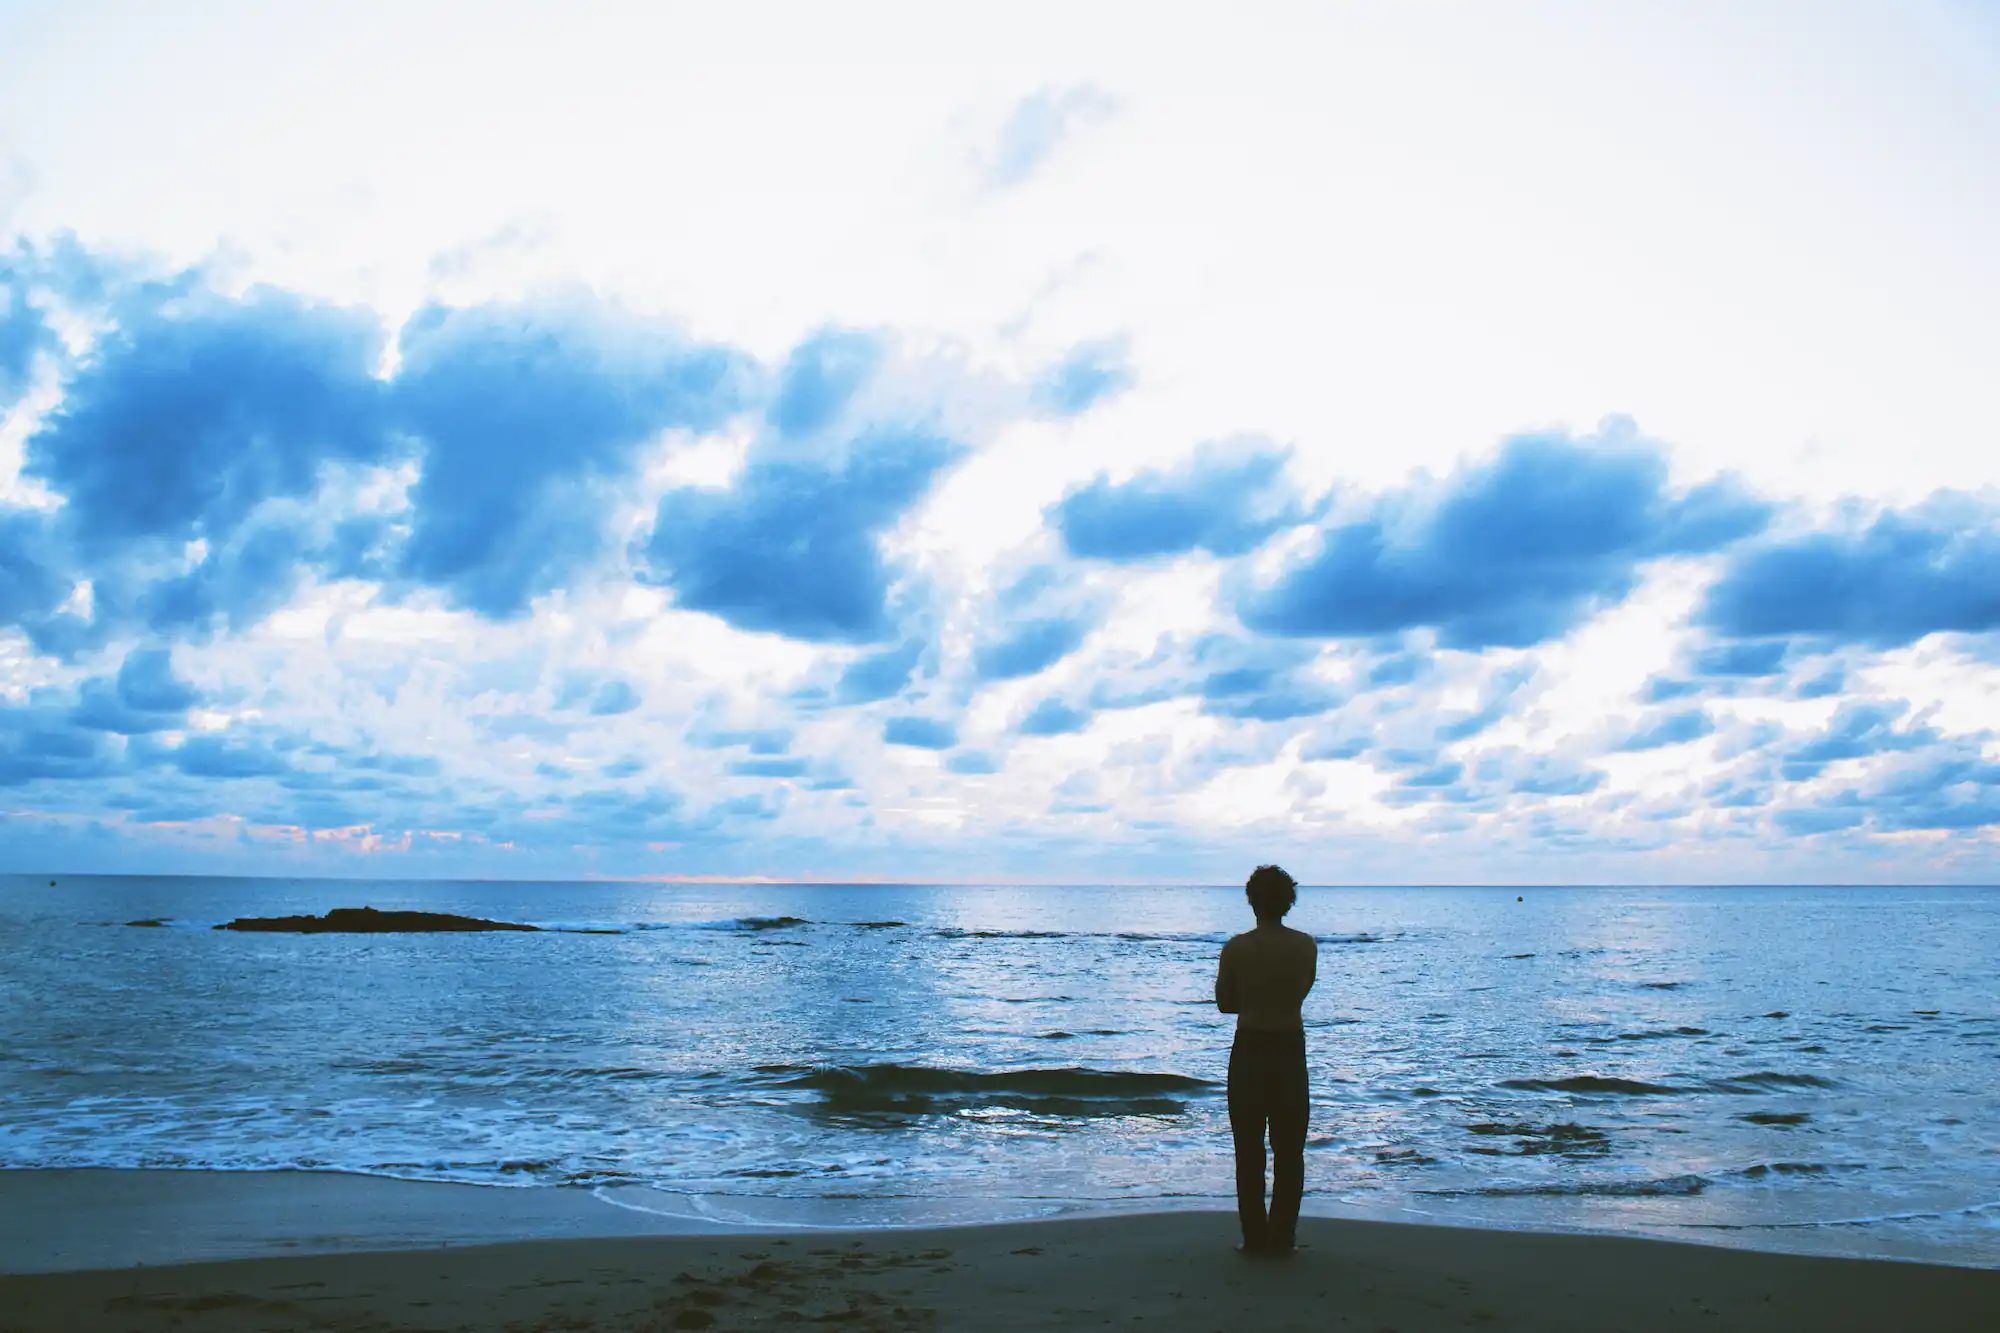 Fotografía de ivansan de espaldas frente al mar para la portada de su nuevo single "Tormenta"